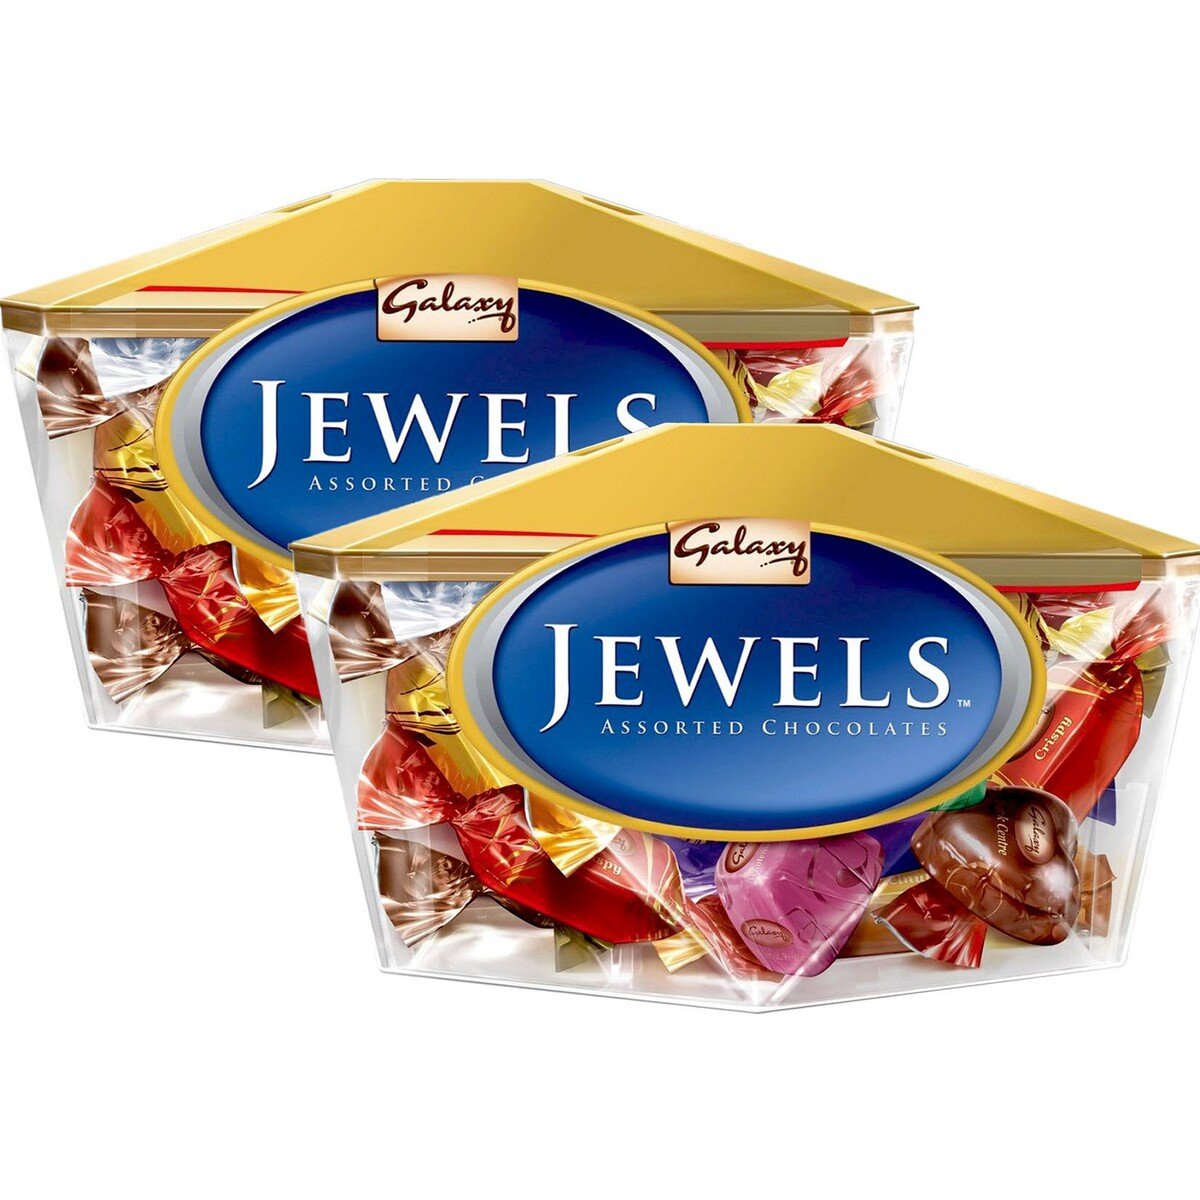 Buy Galaxy Jewels Chocolate 2 x 200 g Online at Best Price | Boxed Chocolate | Lulu UAE in UAE